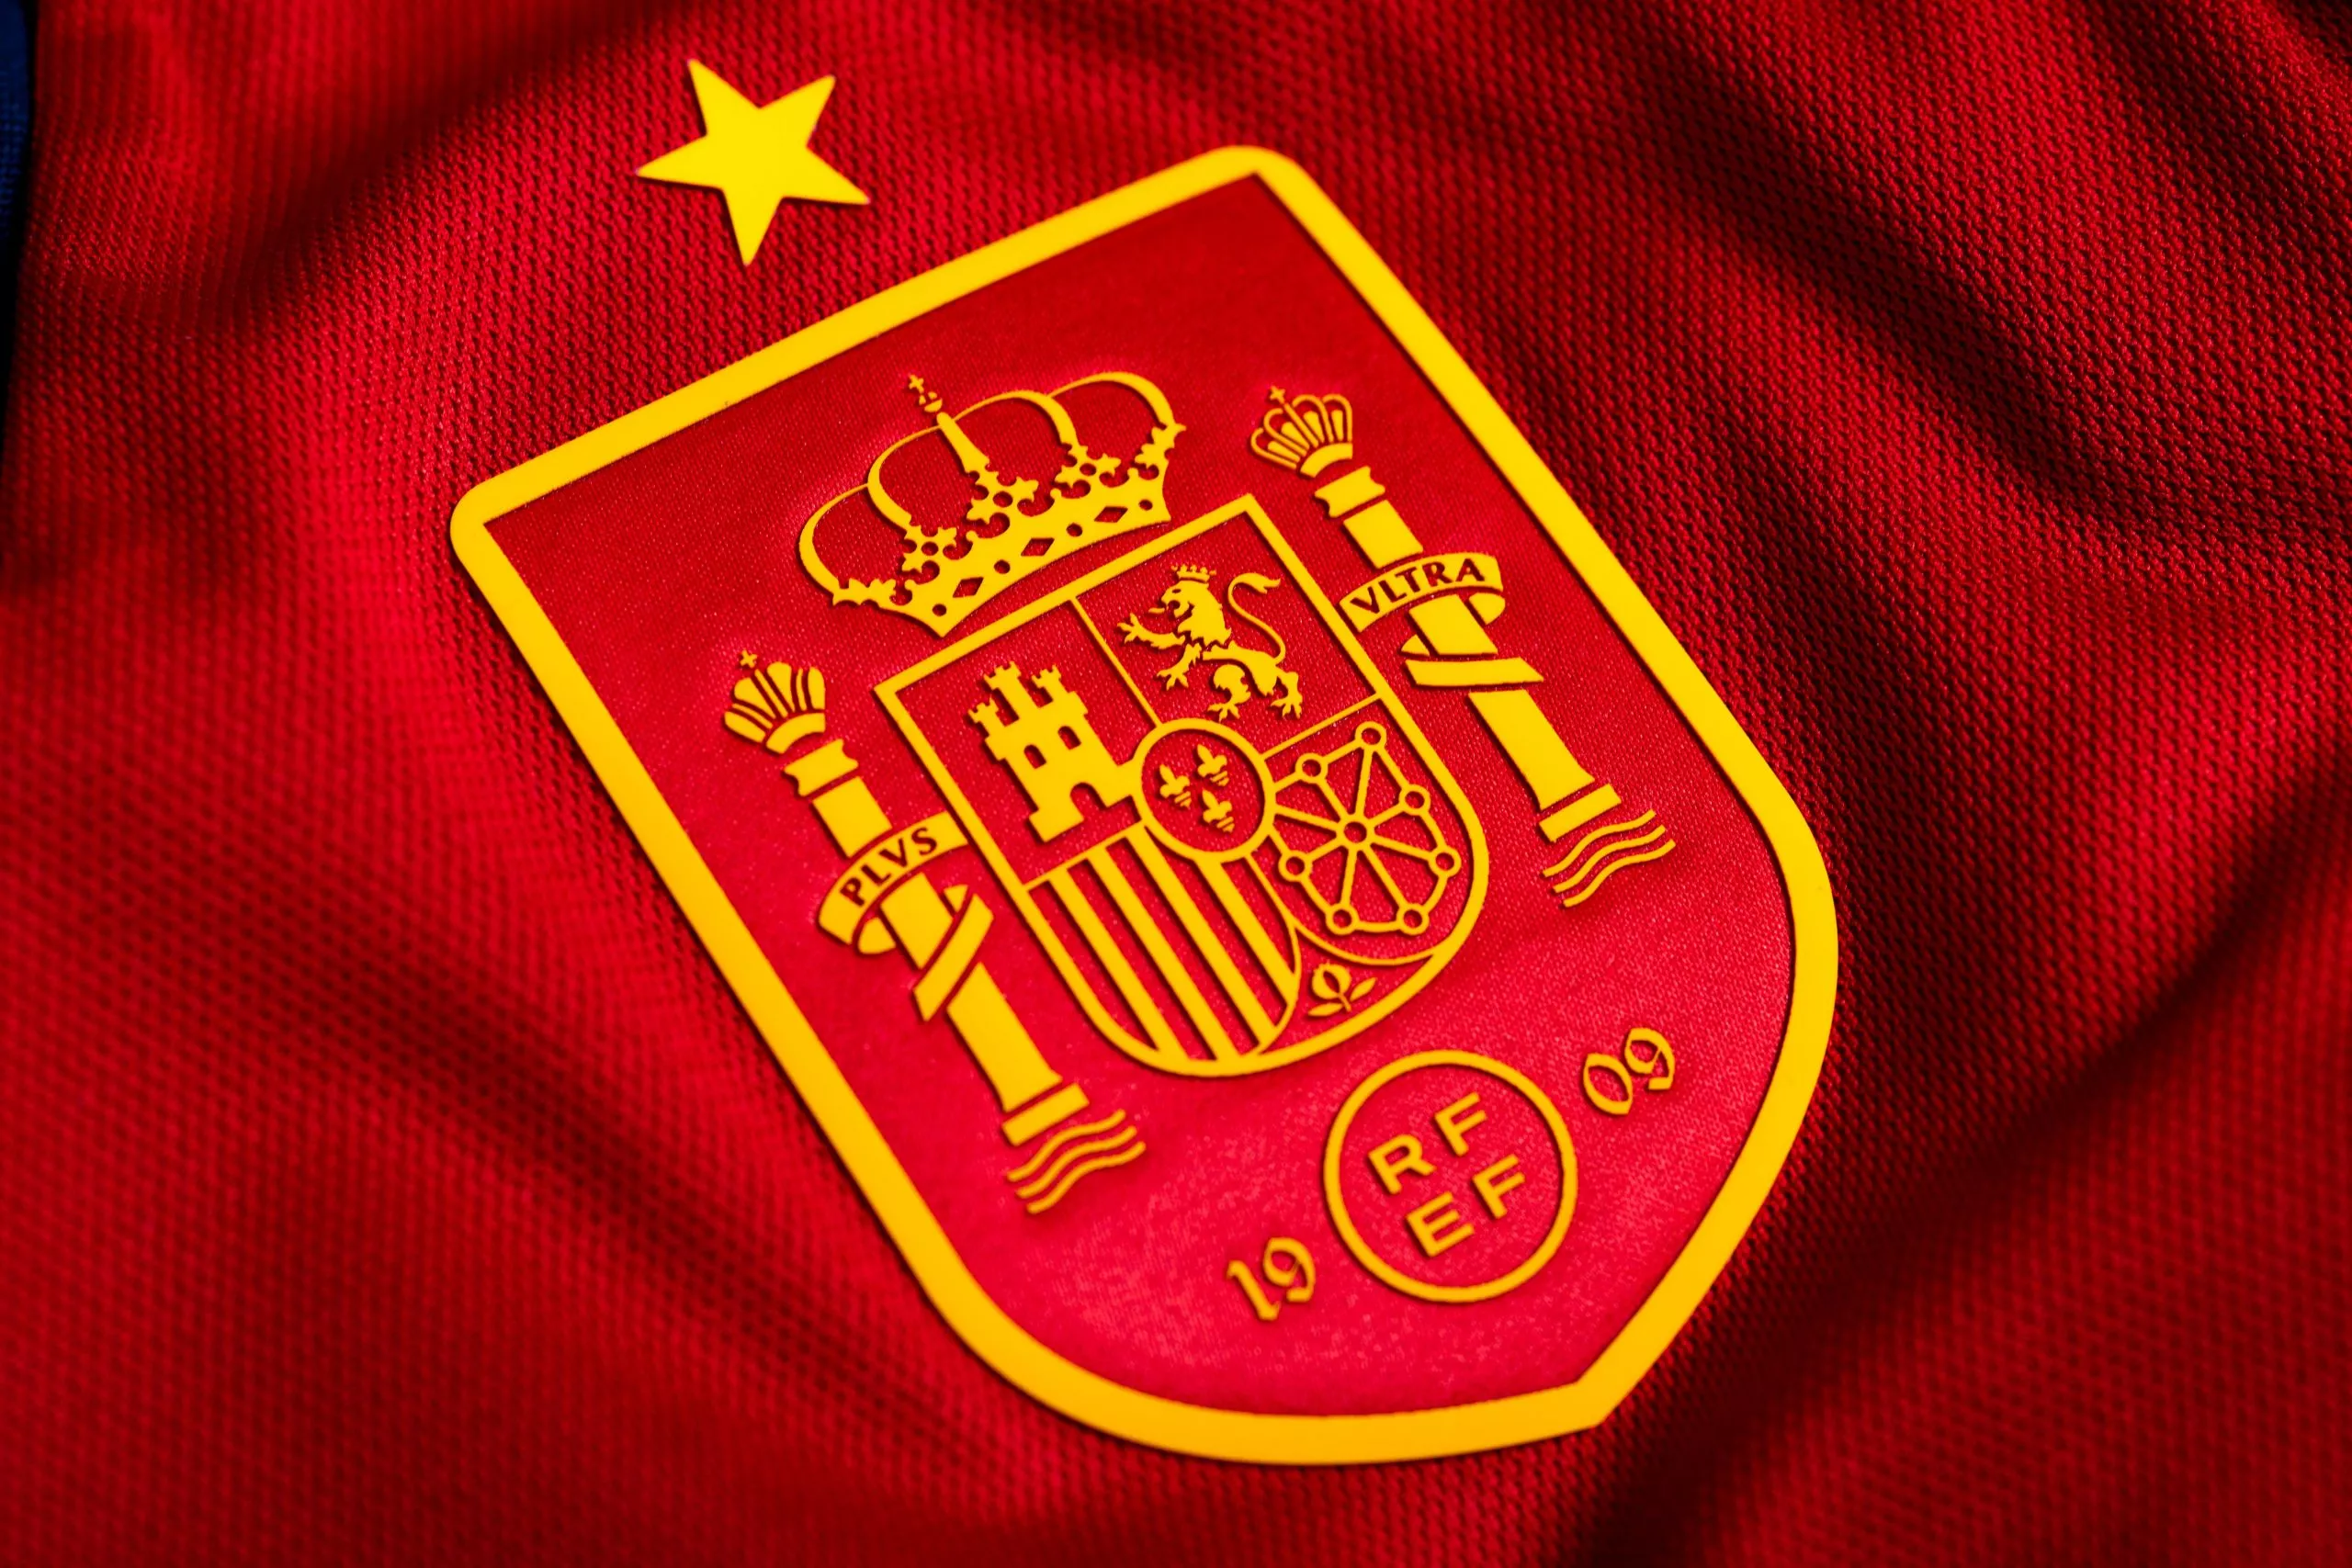 Fotball-VM: Spania møter Costa Rica i sin åpningskamp